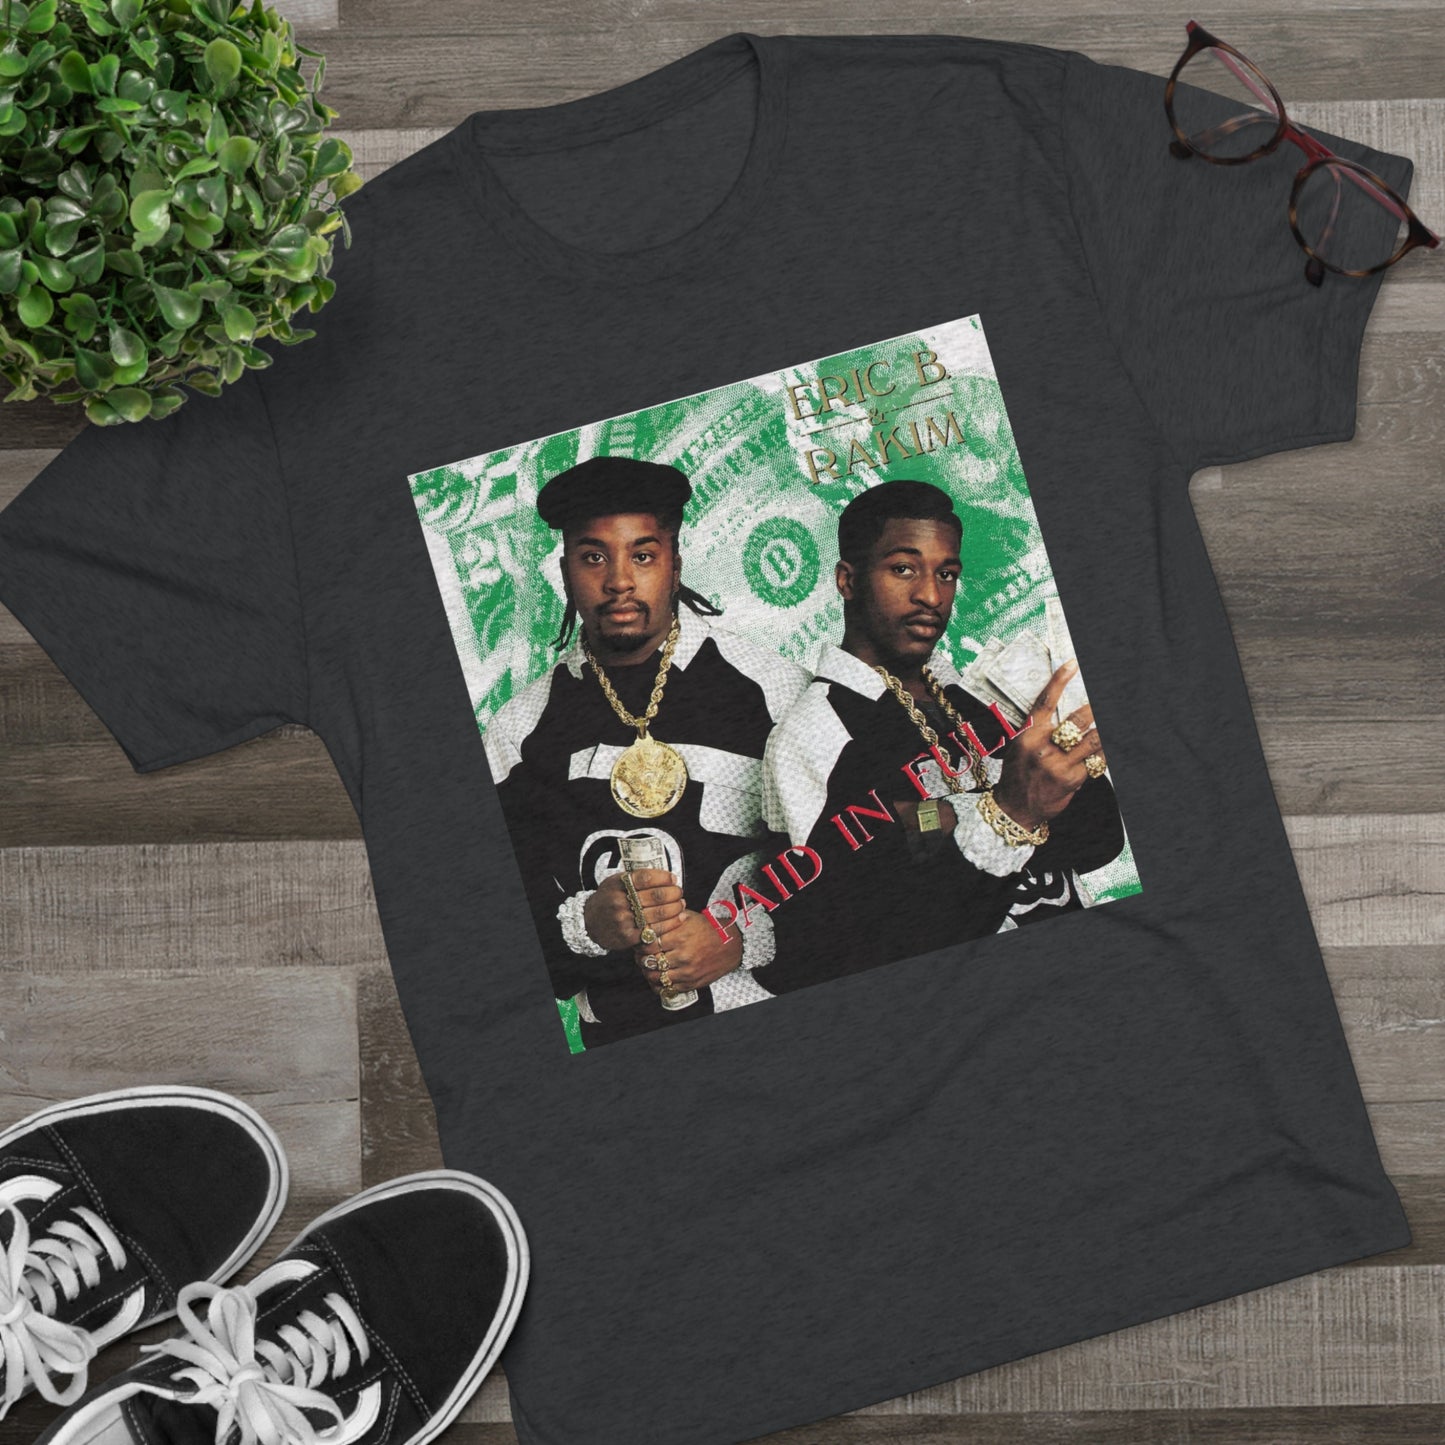 Classic Hip-Hop Vibes Tri-Blend T-Shirt - Inspired by Eric B. & Rakim